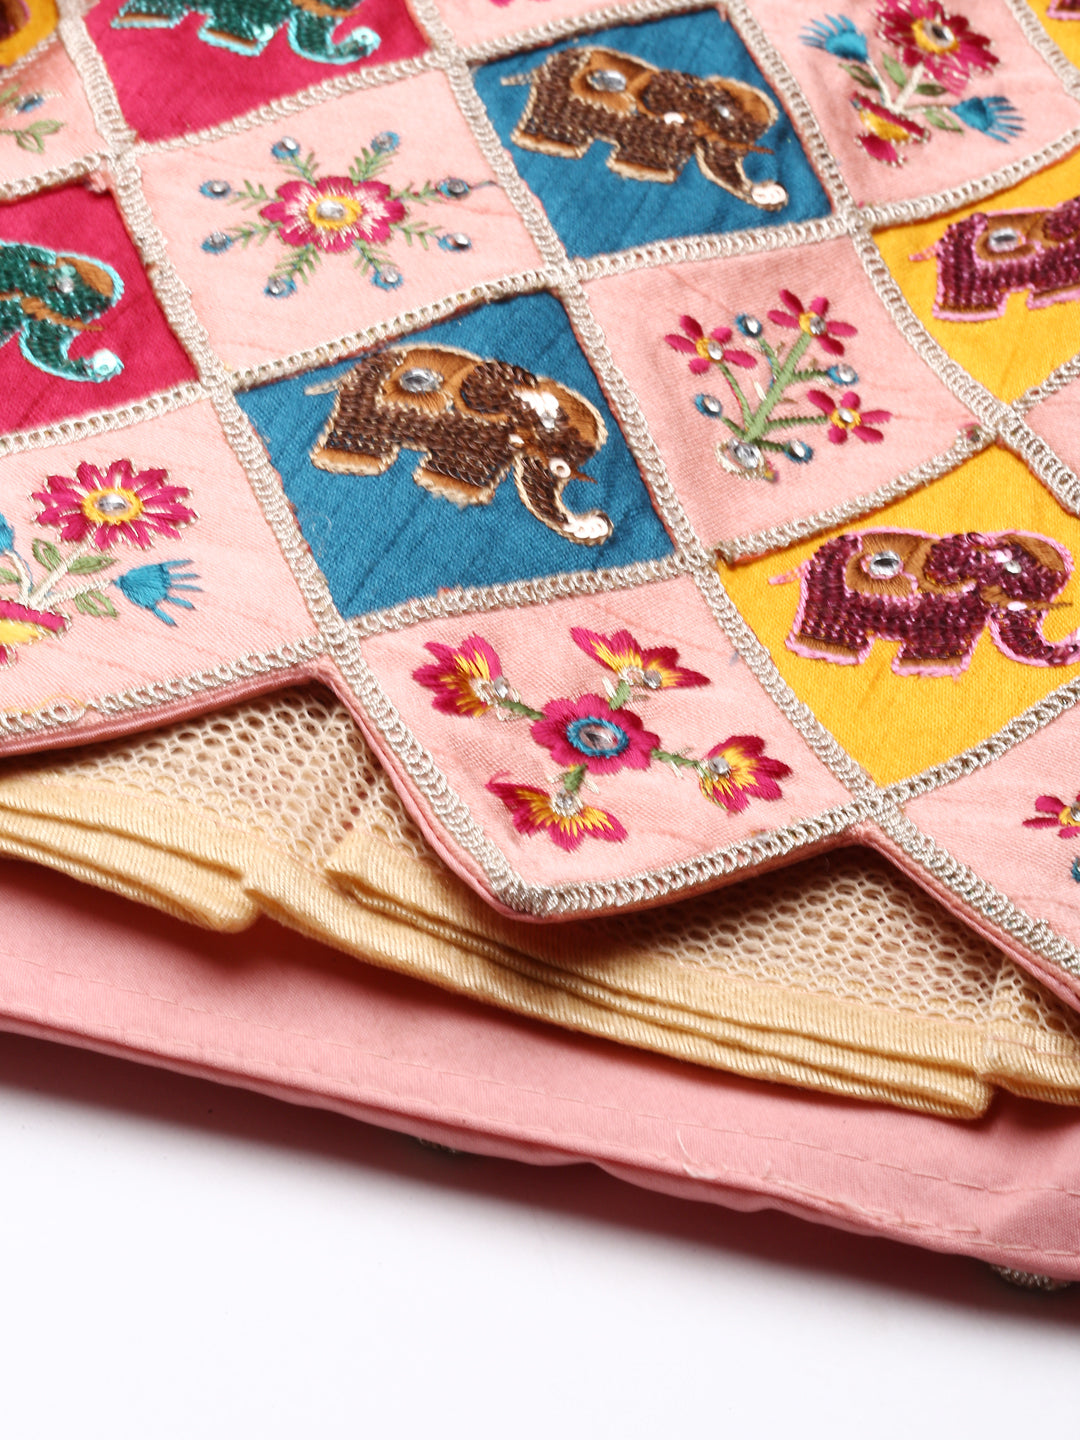 Women's Pure Art Silk Patch Work Fully-Stitched Lehenga & Stitched Blouse, Dupatta - Royal Dwells